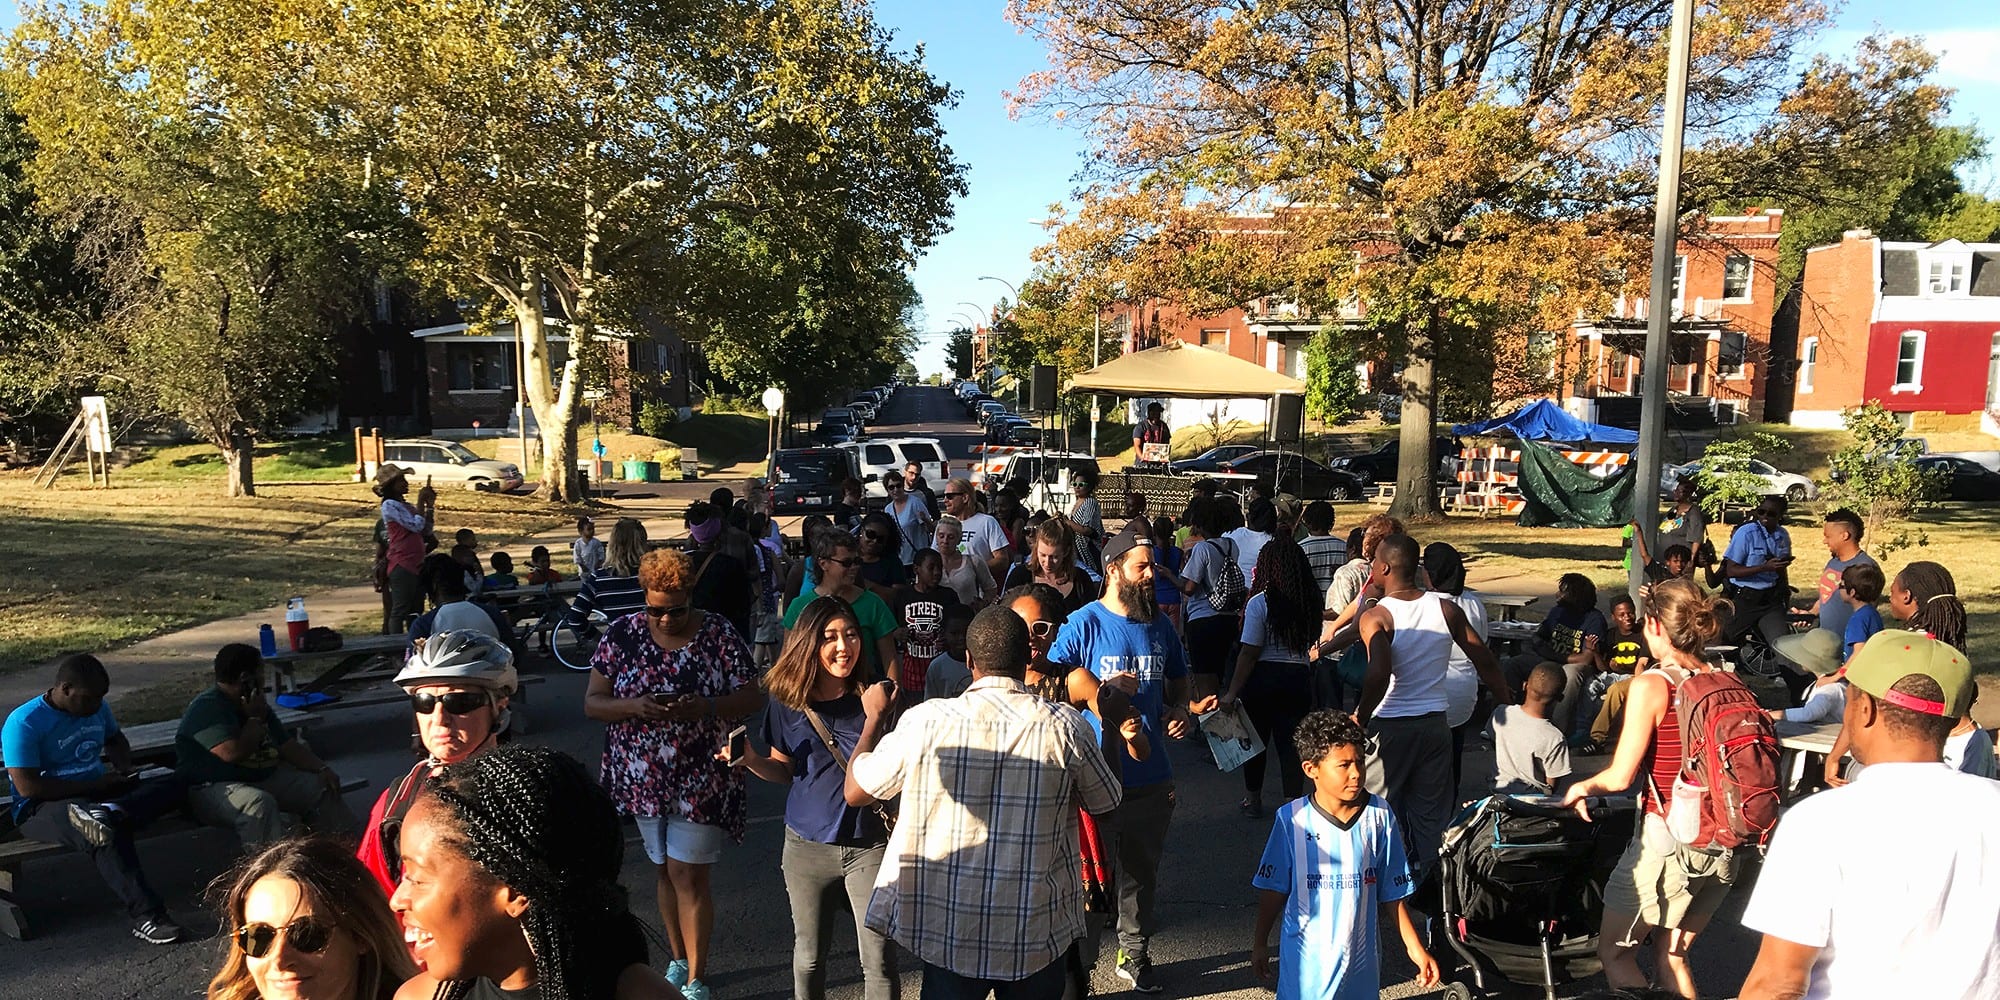 تتجمع الحشود في مهرجان الصوت المشترك لعام 2017 في ماركيت بارك في دوتشتاون ، سانت لويس.